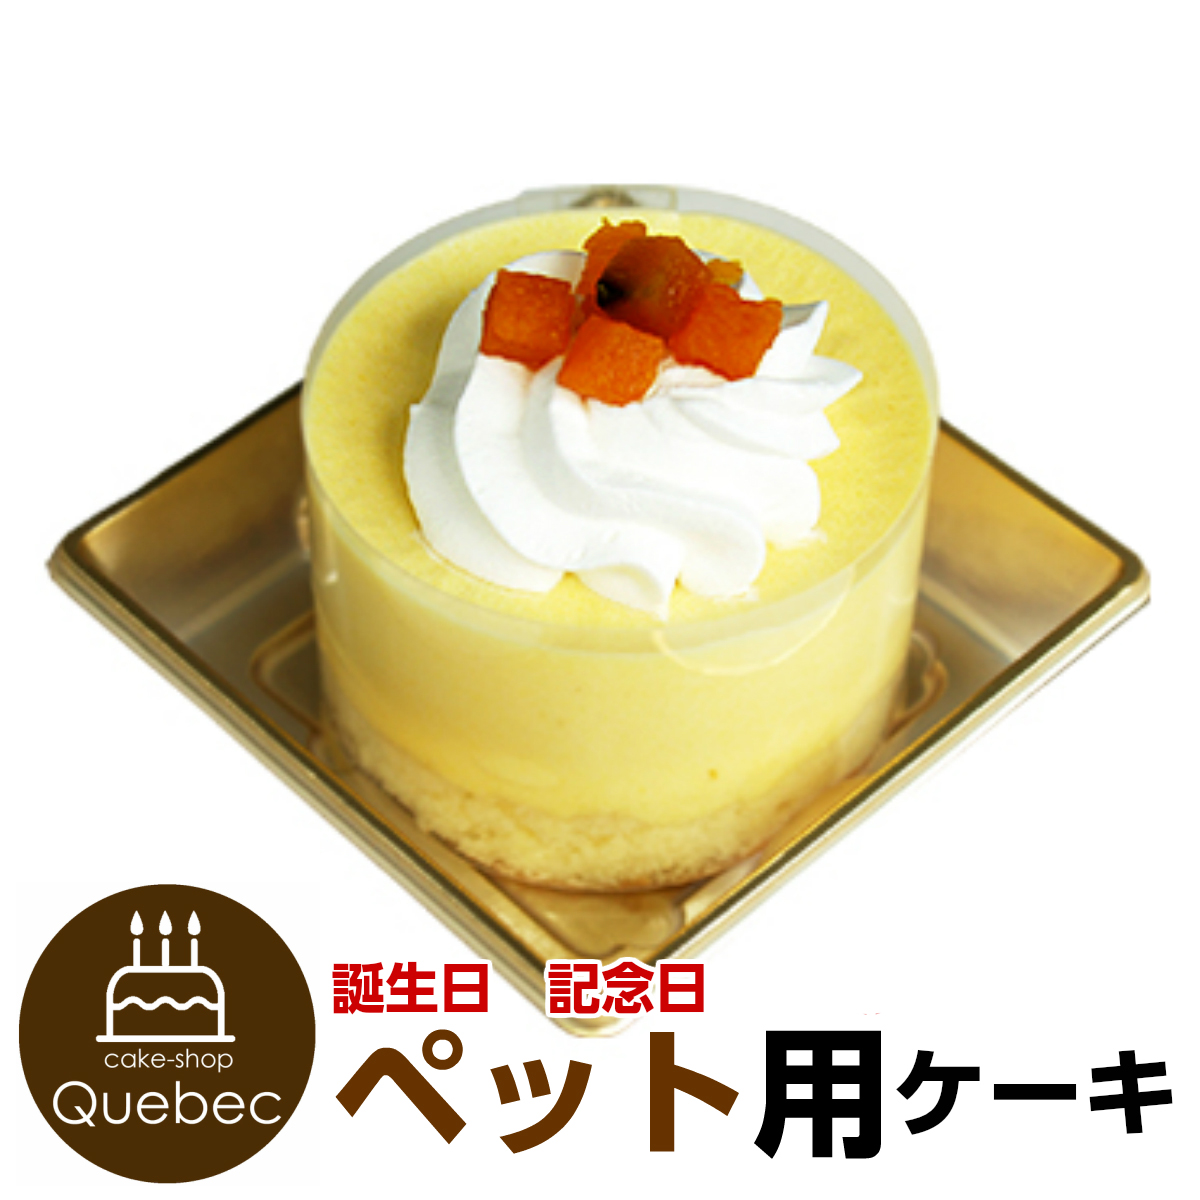 楽天市場 ペット用ケーキ コミフ ペットケーキ 誕生日ケーキのお店ケベック